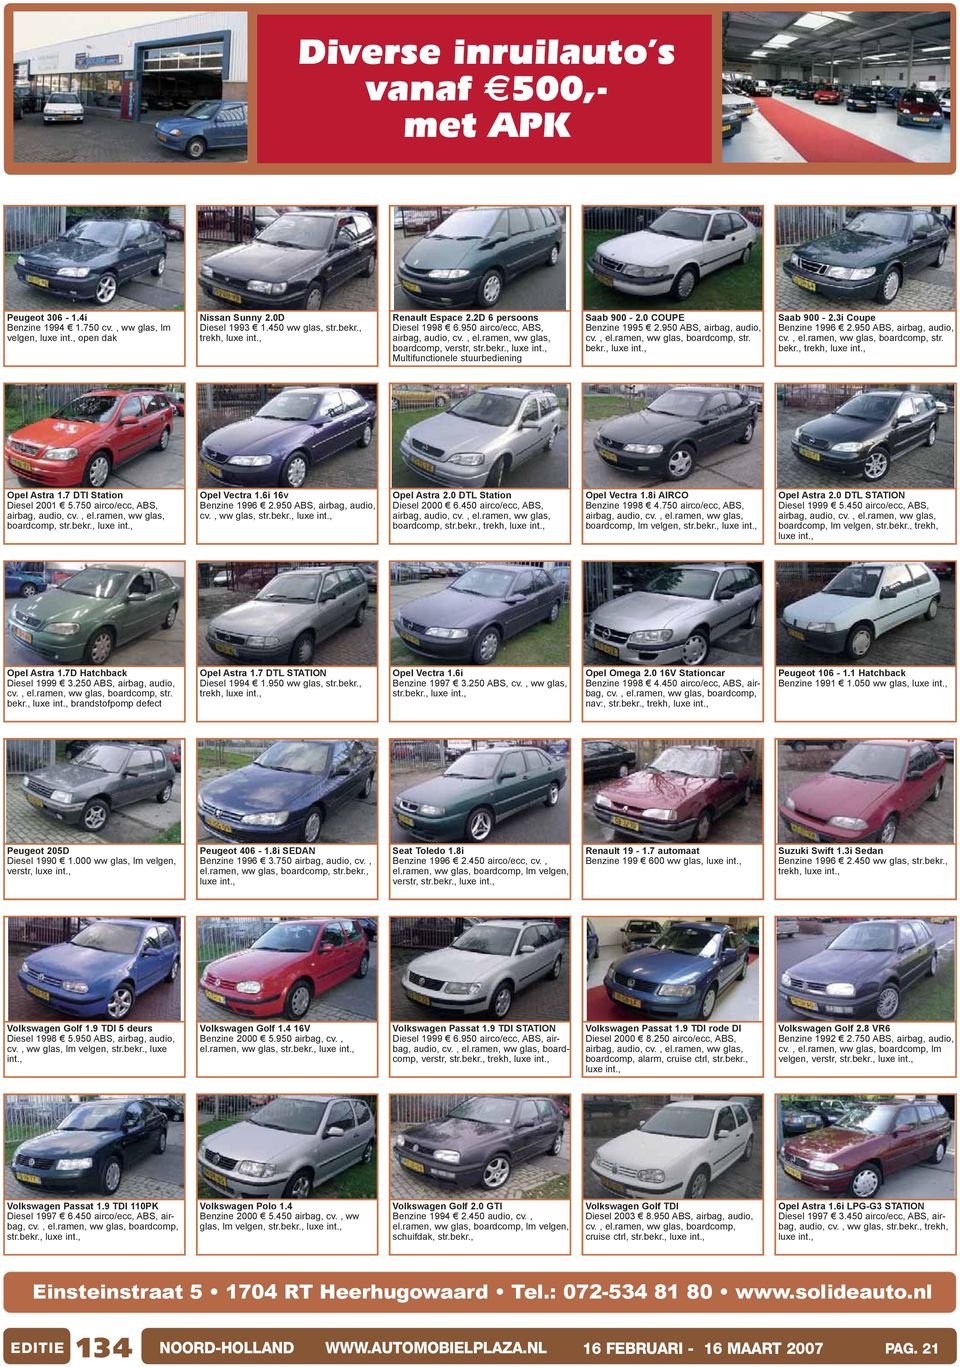 ramen, ww glas, boardcomp, str. Saab 900-2.3i Coupe Benzine 1996 2.950 ABS, airbag, audio, cv., el.ramen, ww glas, boardcomp, str. trekh, Opel Astra 1.7 DTI Station Diesel 2001 5.